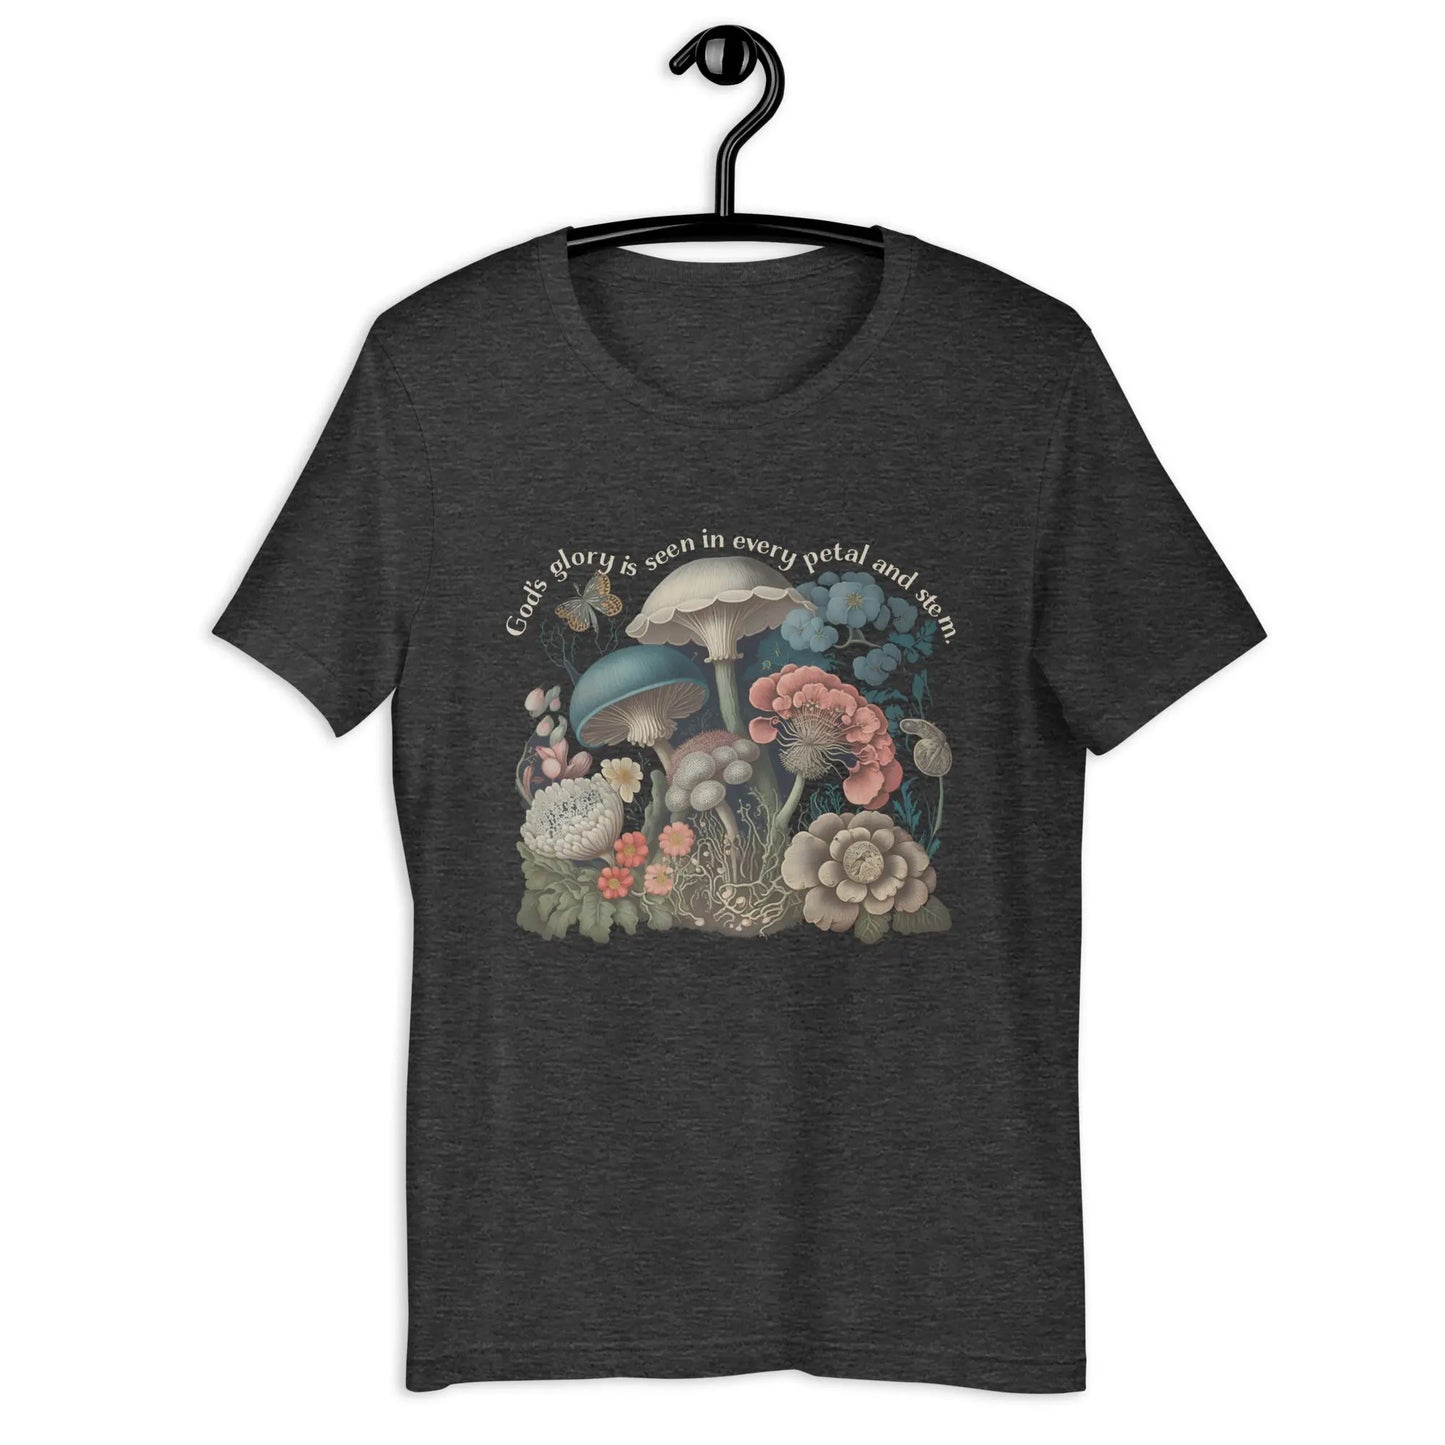 God's Glory Mushroom and Flowers Tshirt, Cottagecore Shirt, Mushroom Tshirt Amazing Faith Designs